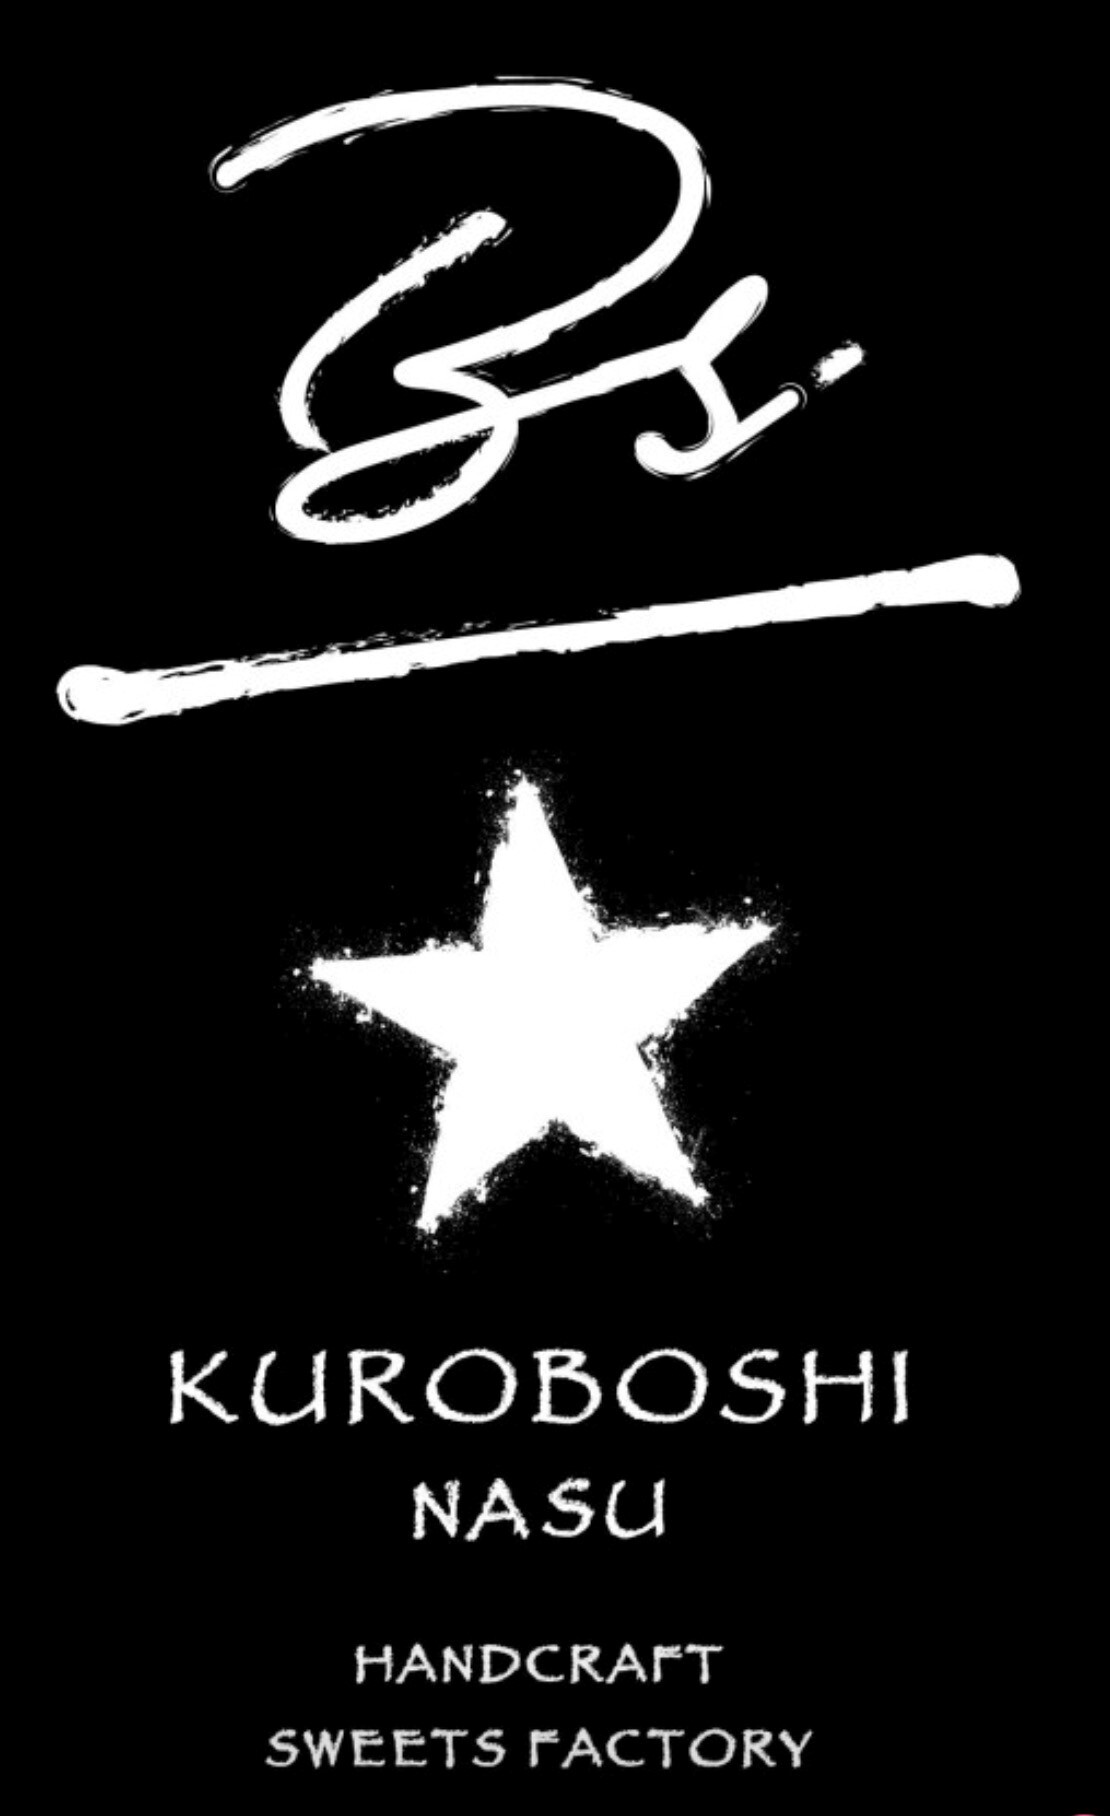 KUROBOSHI